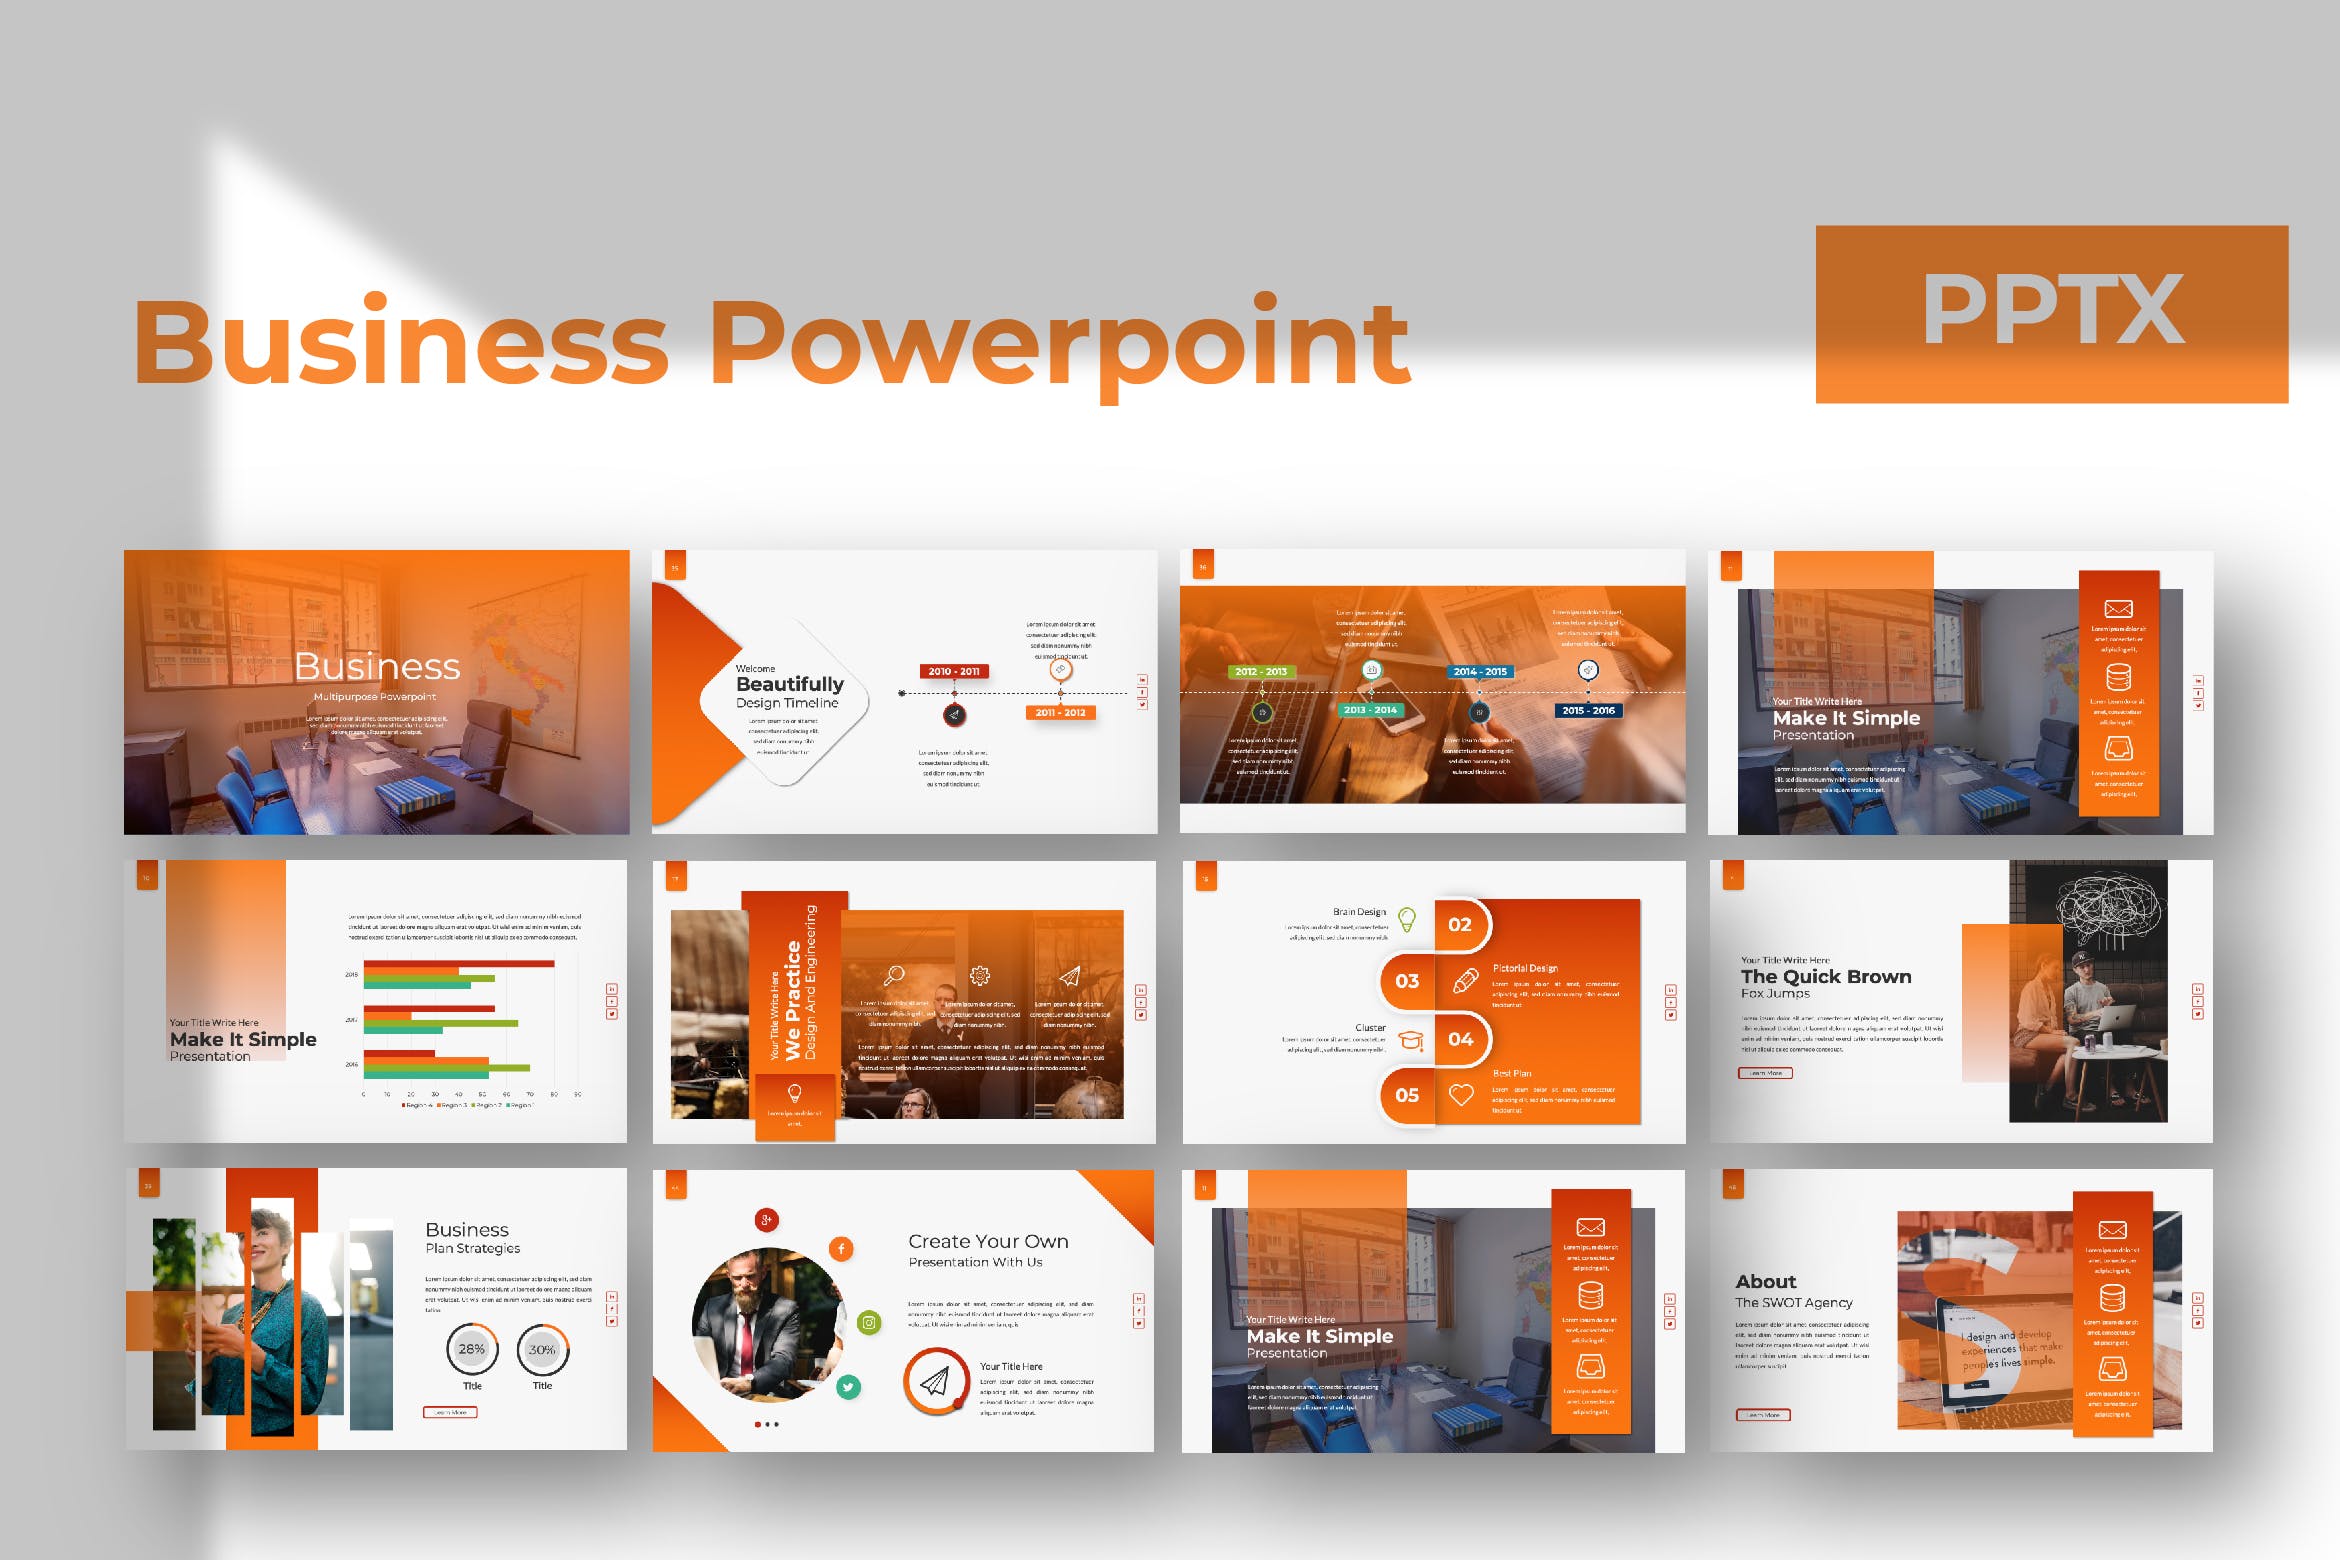 企业市场规划/业务发展计划PPT幻灯片设计模板 Business Powerpoint Template插图